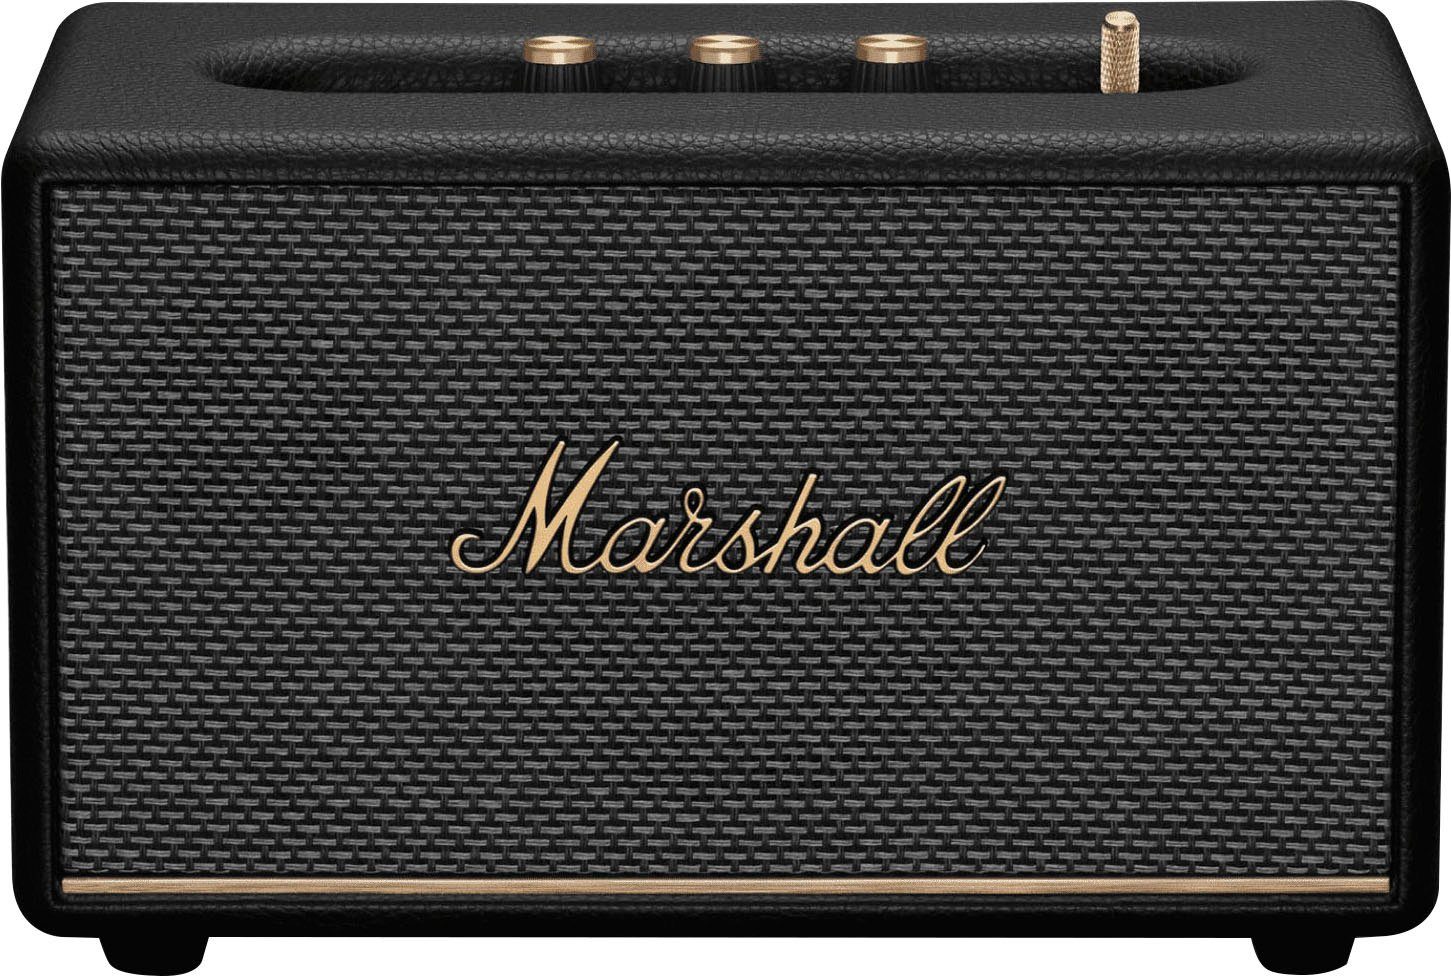 Großer Sonderpreis!! Marshall Acton III Stereo schwarz (Bluetooth, Bluetooth-Lautsprecher 60 W)